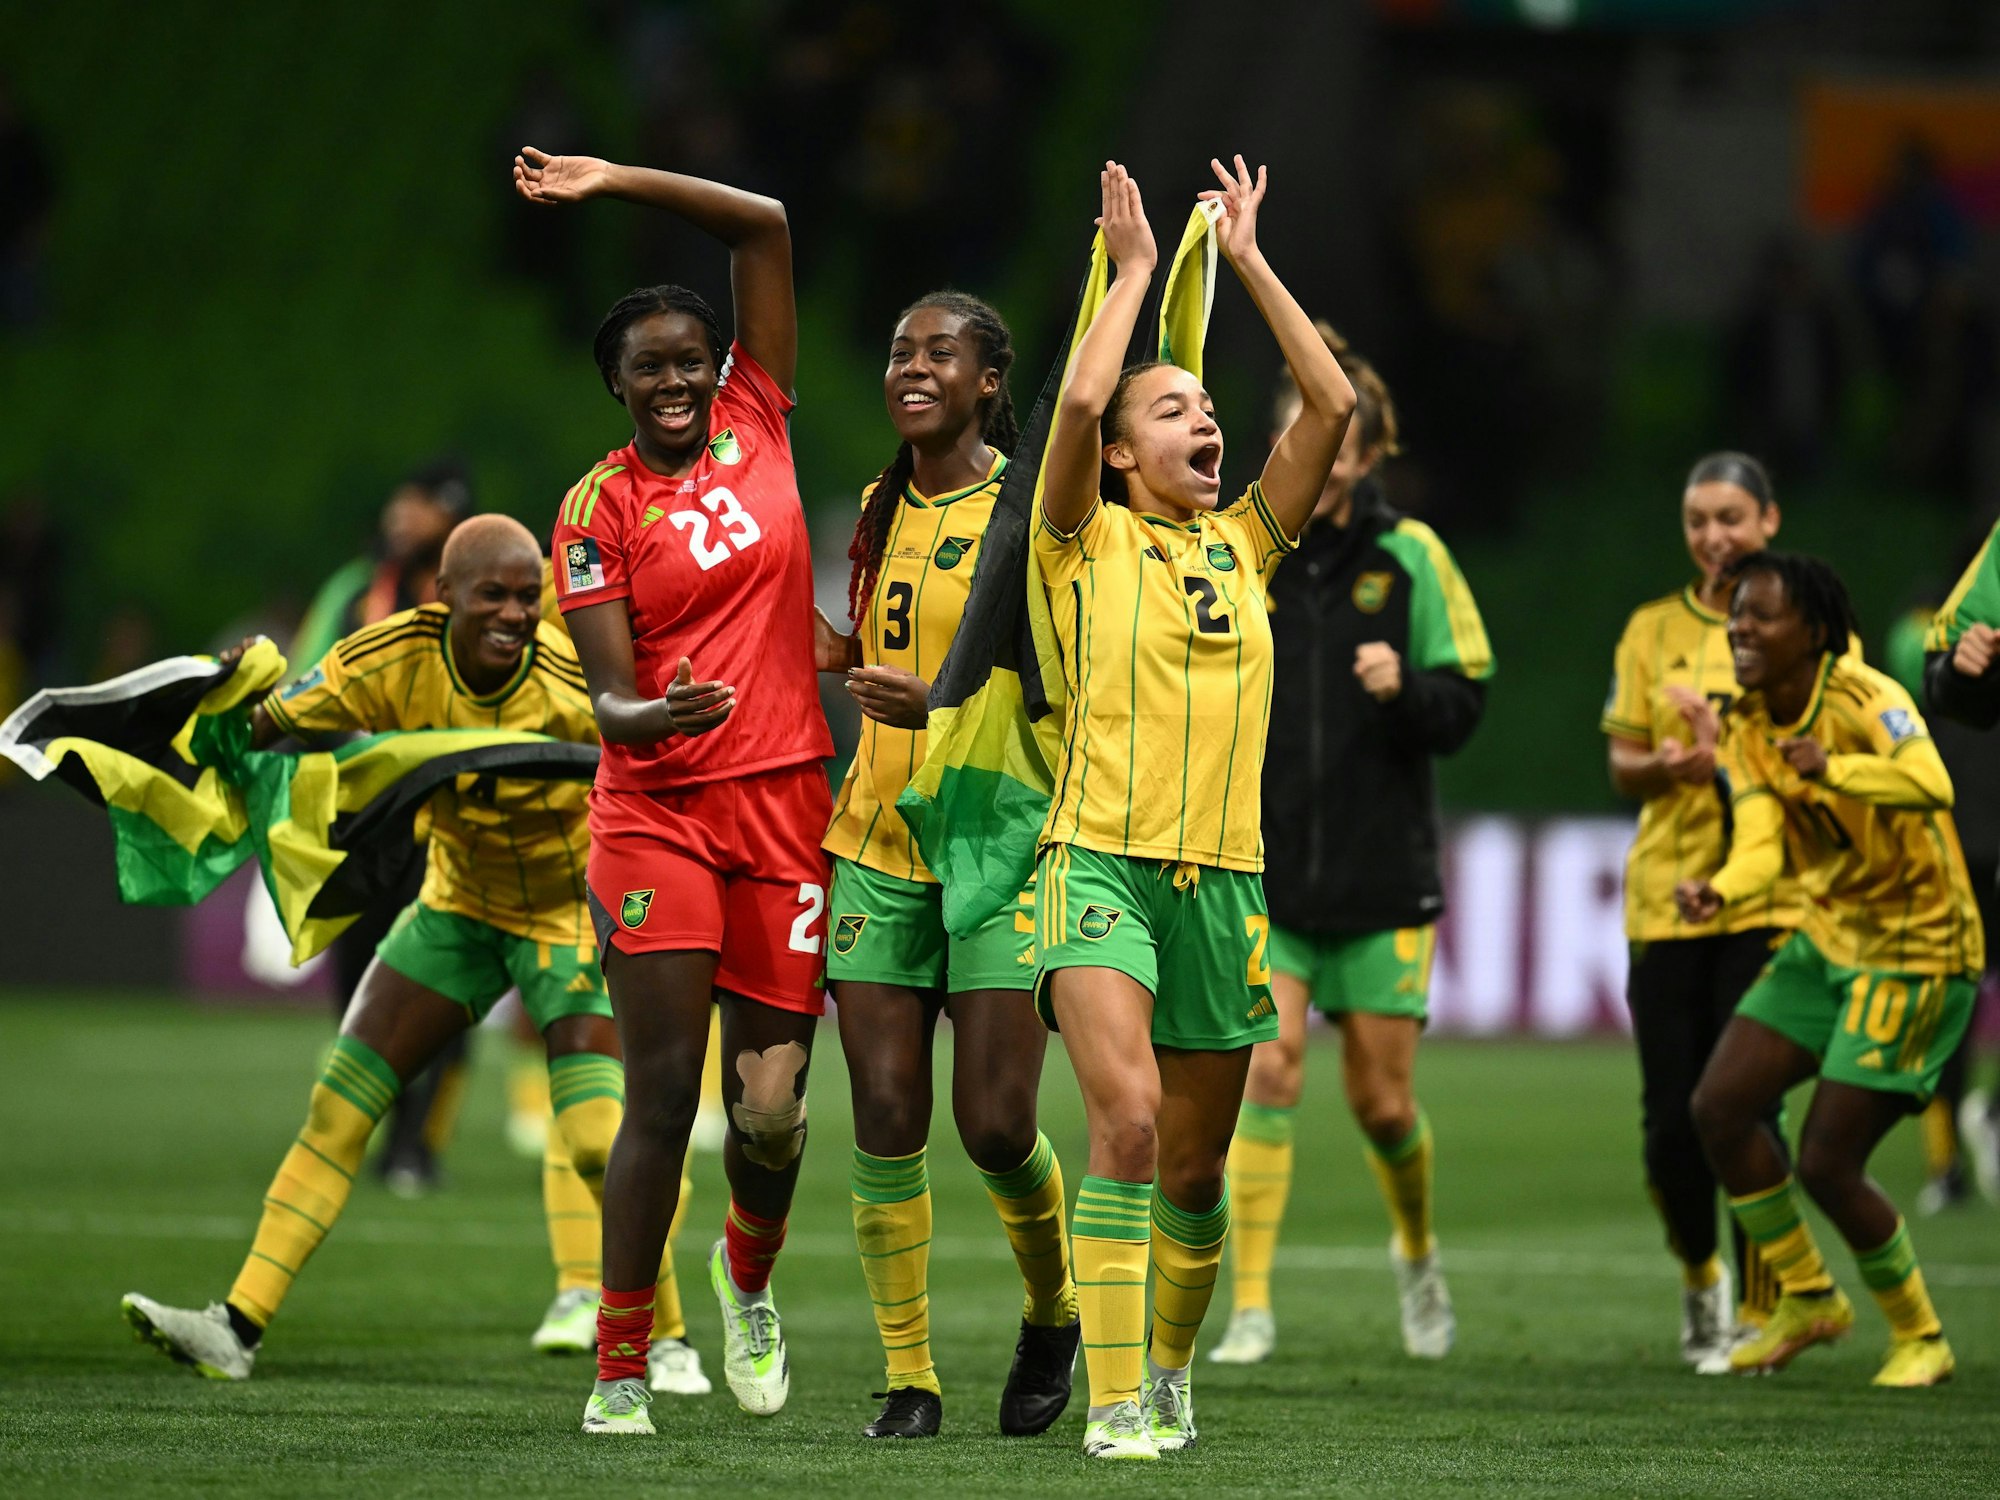 Das Team aus Jamaika feiert nach dem 0:0-Unentschieden gegen Brasilien, das den Einzug ins Achtelfinale bedeutet.